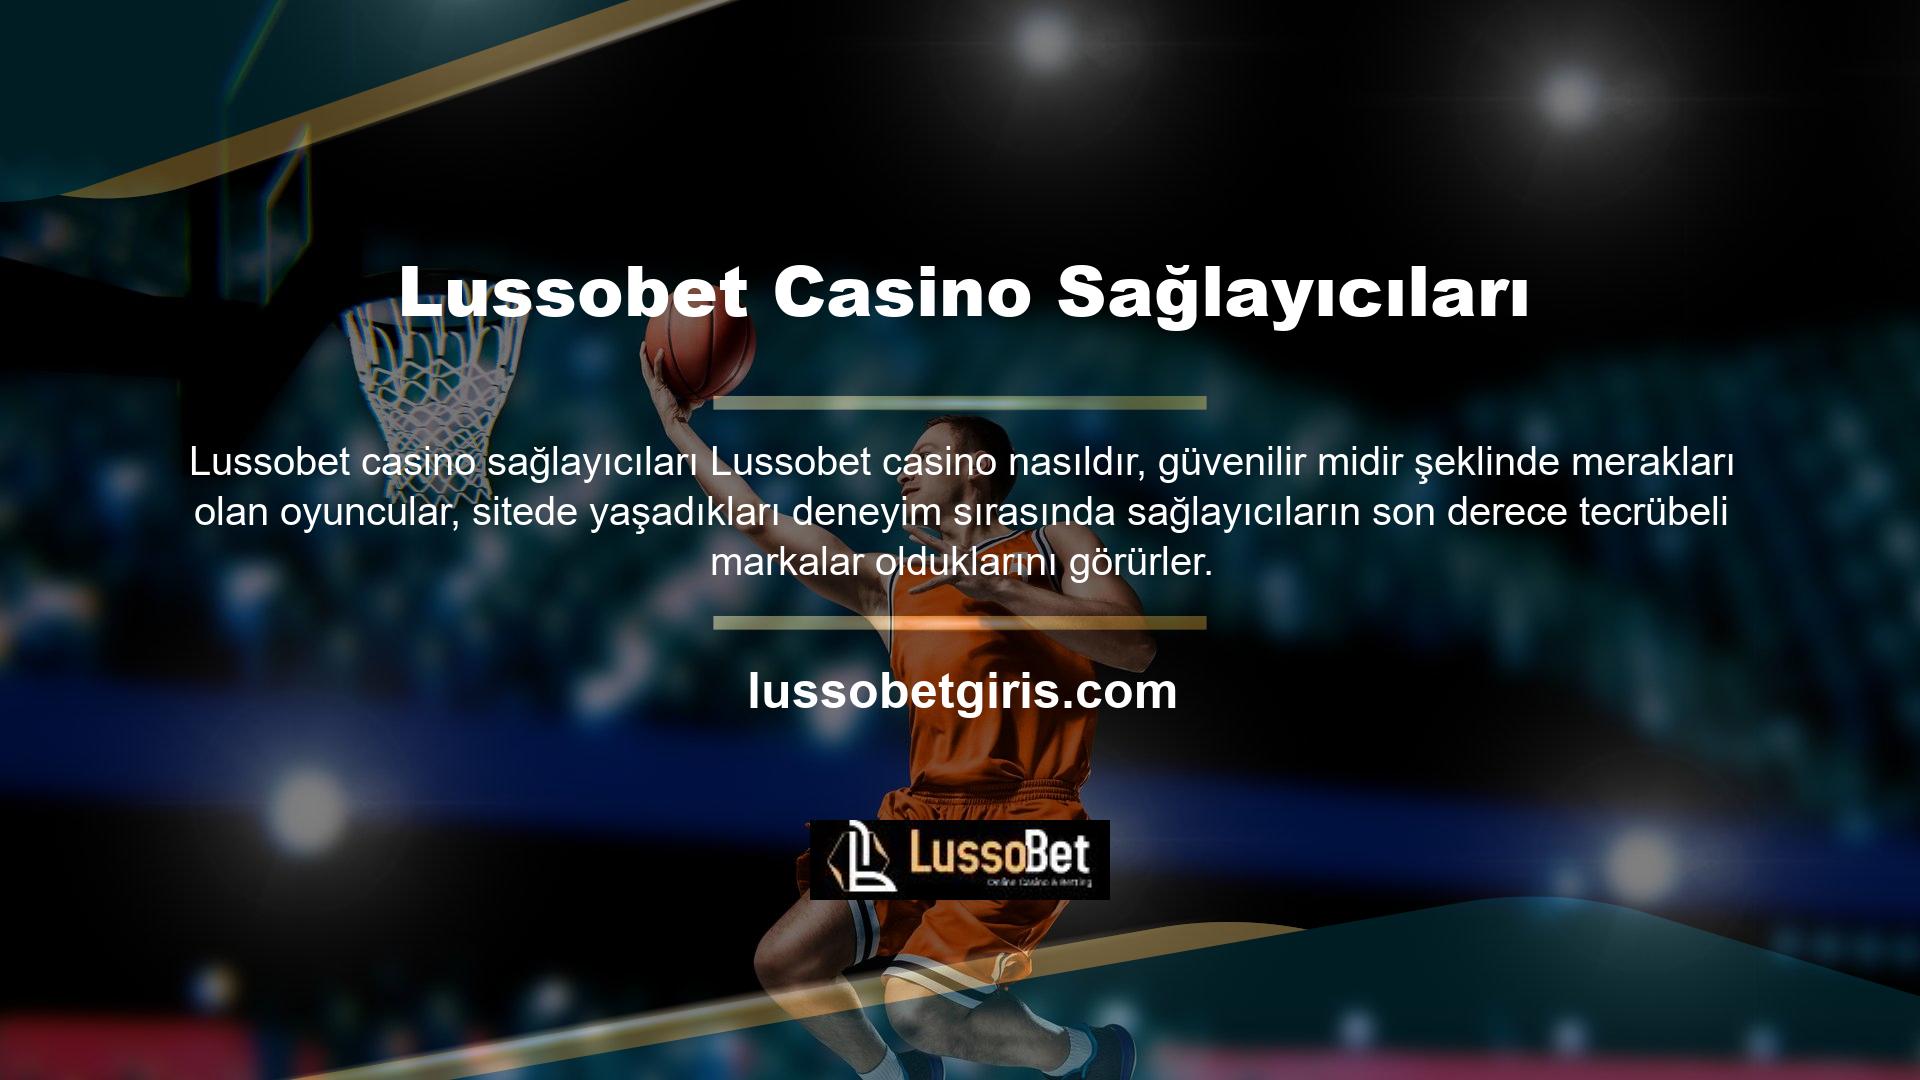 Türk bahis severlere en sorunsuz bahis deneyimini yaşatan Lussobet dünyası, kullanıcıların casino oyunlarını bu sayede en güvenilir hali ile almasını sağlar